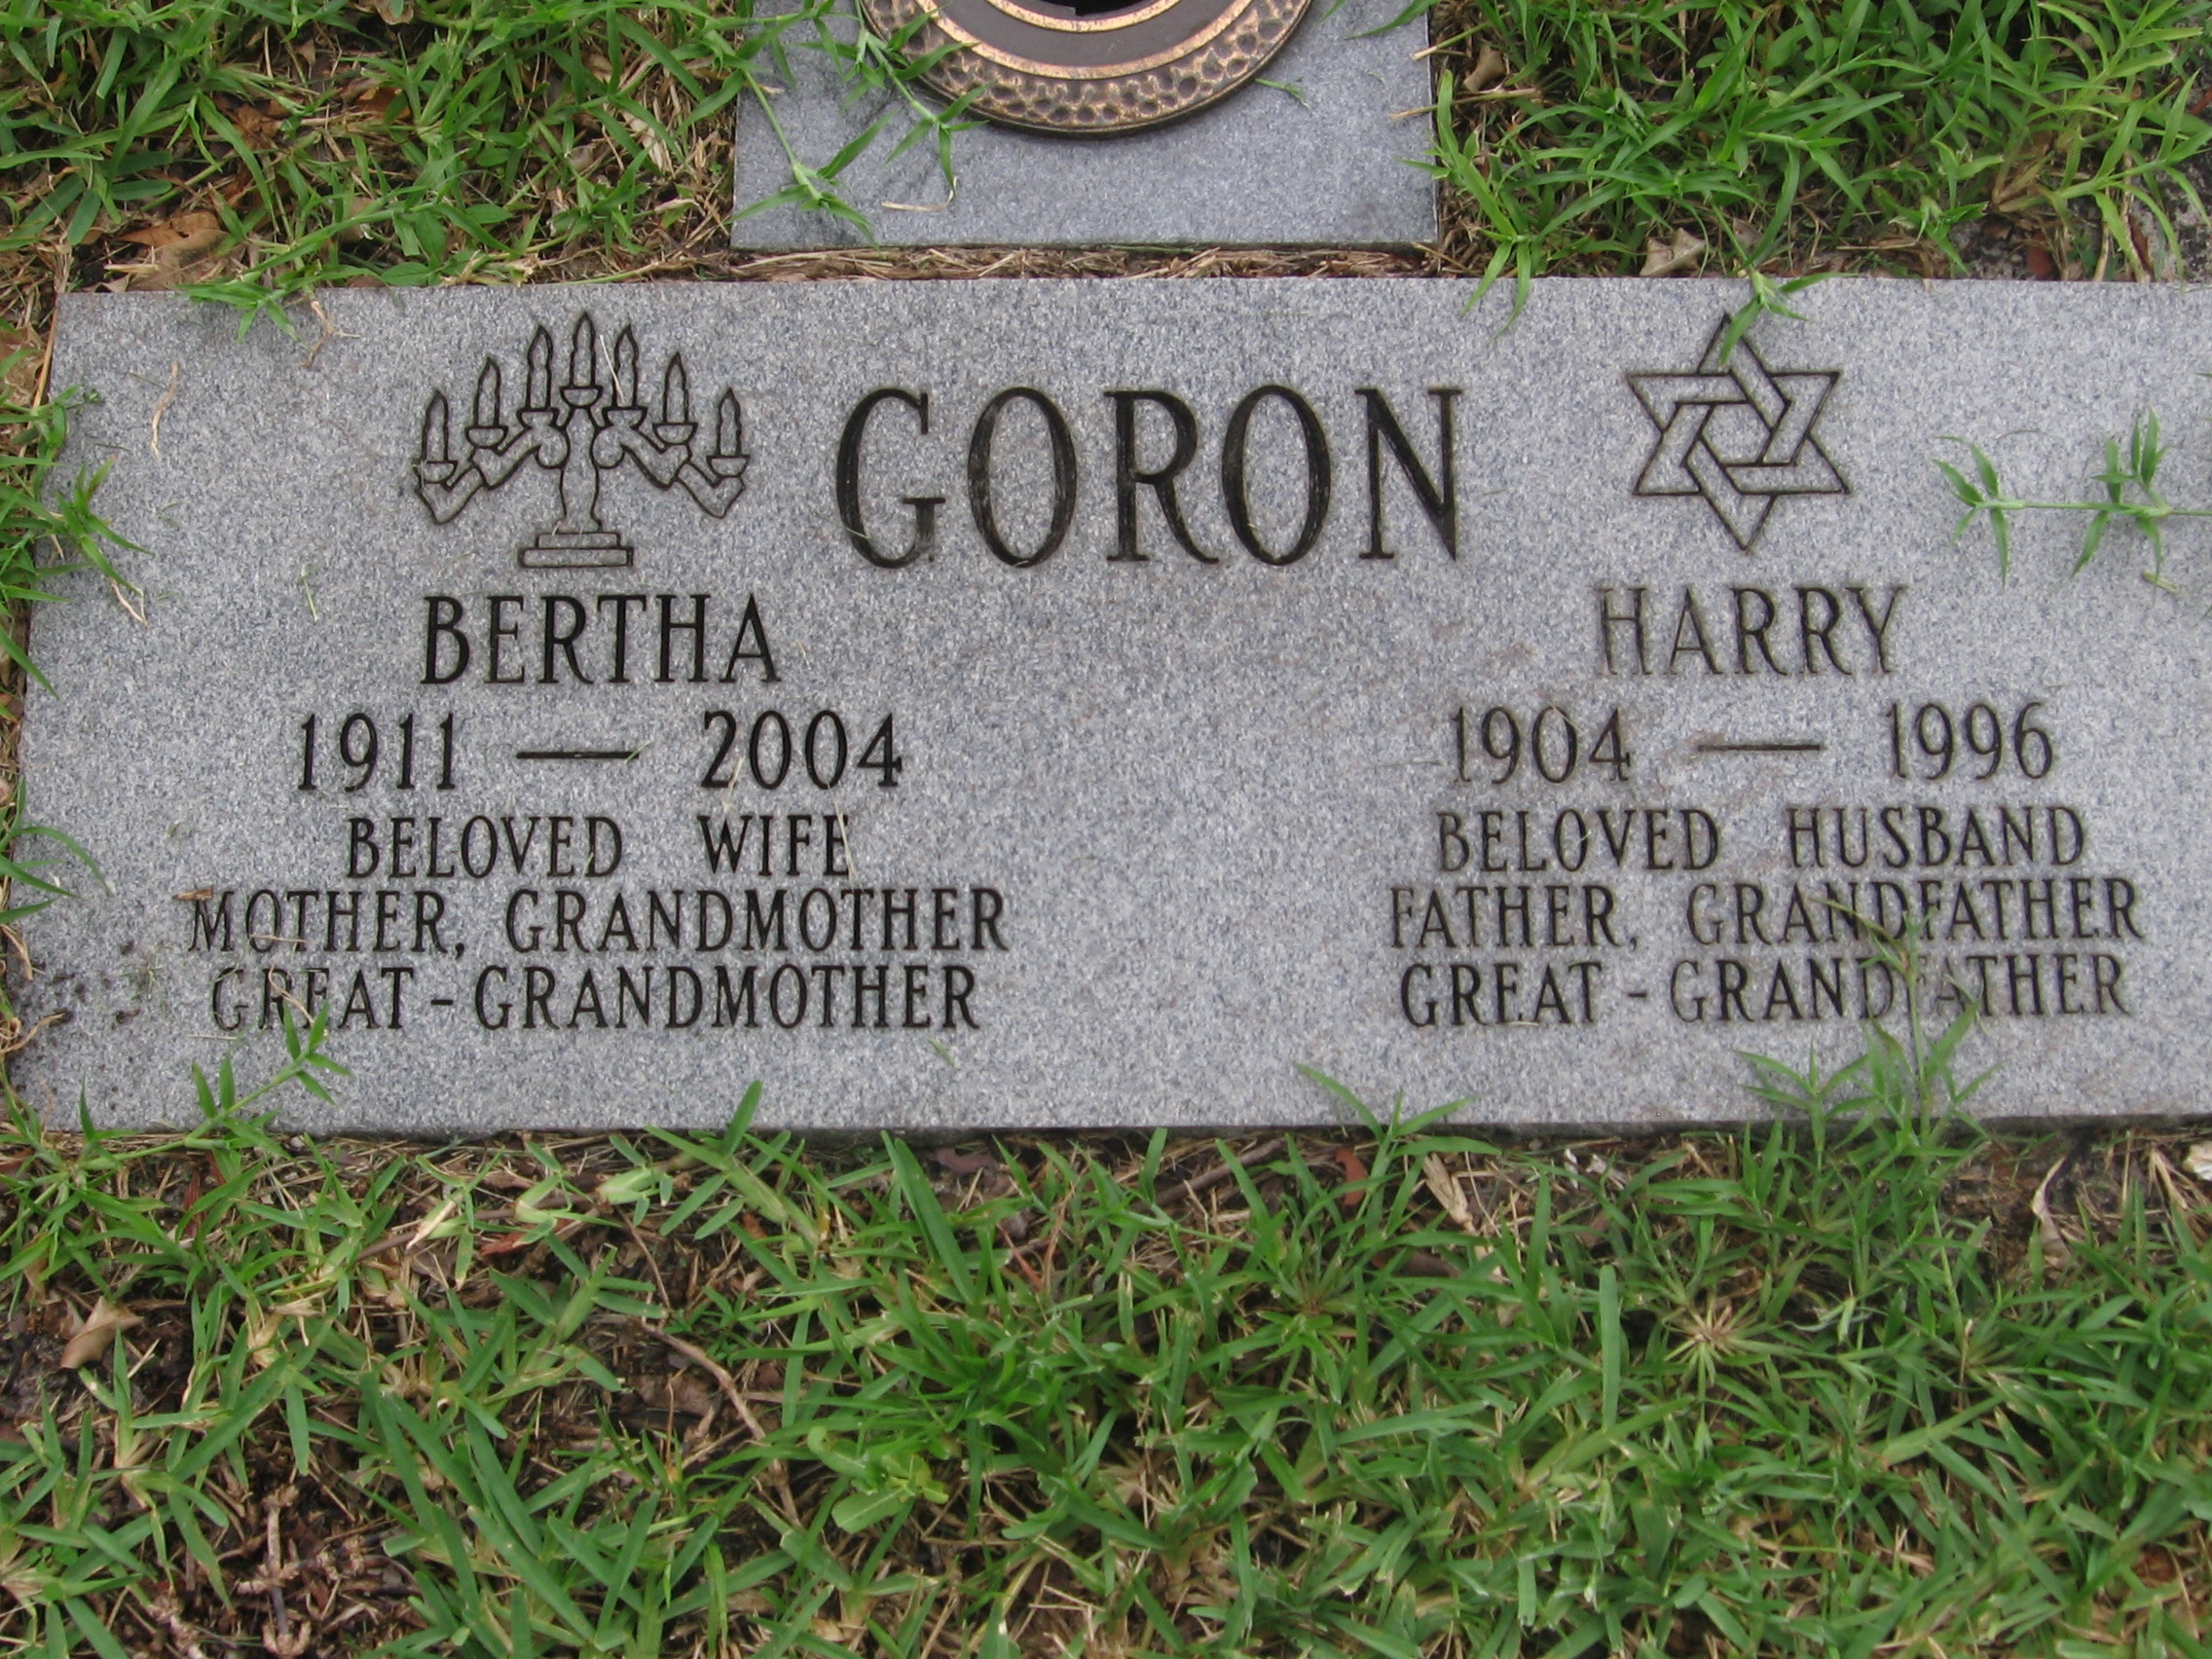 Bertha Goron